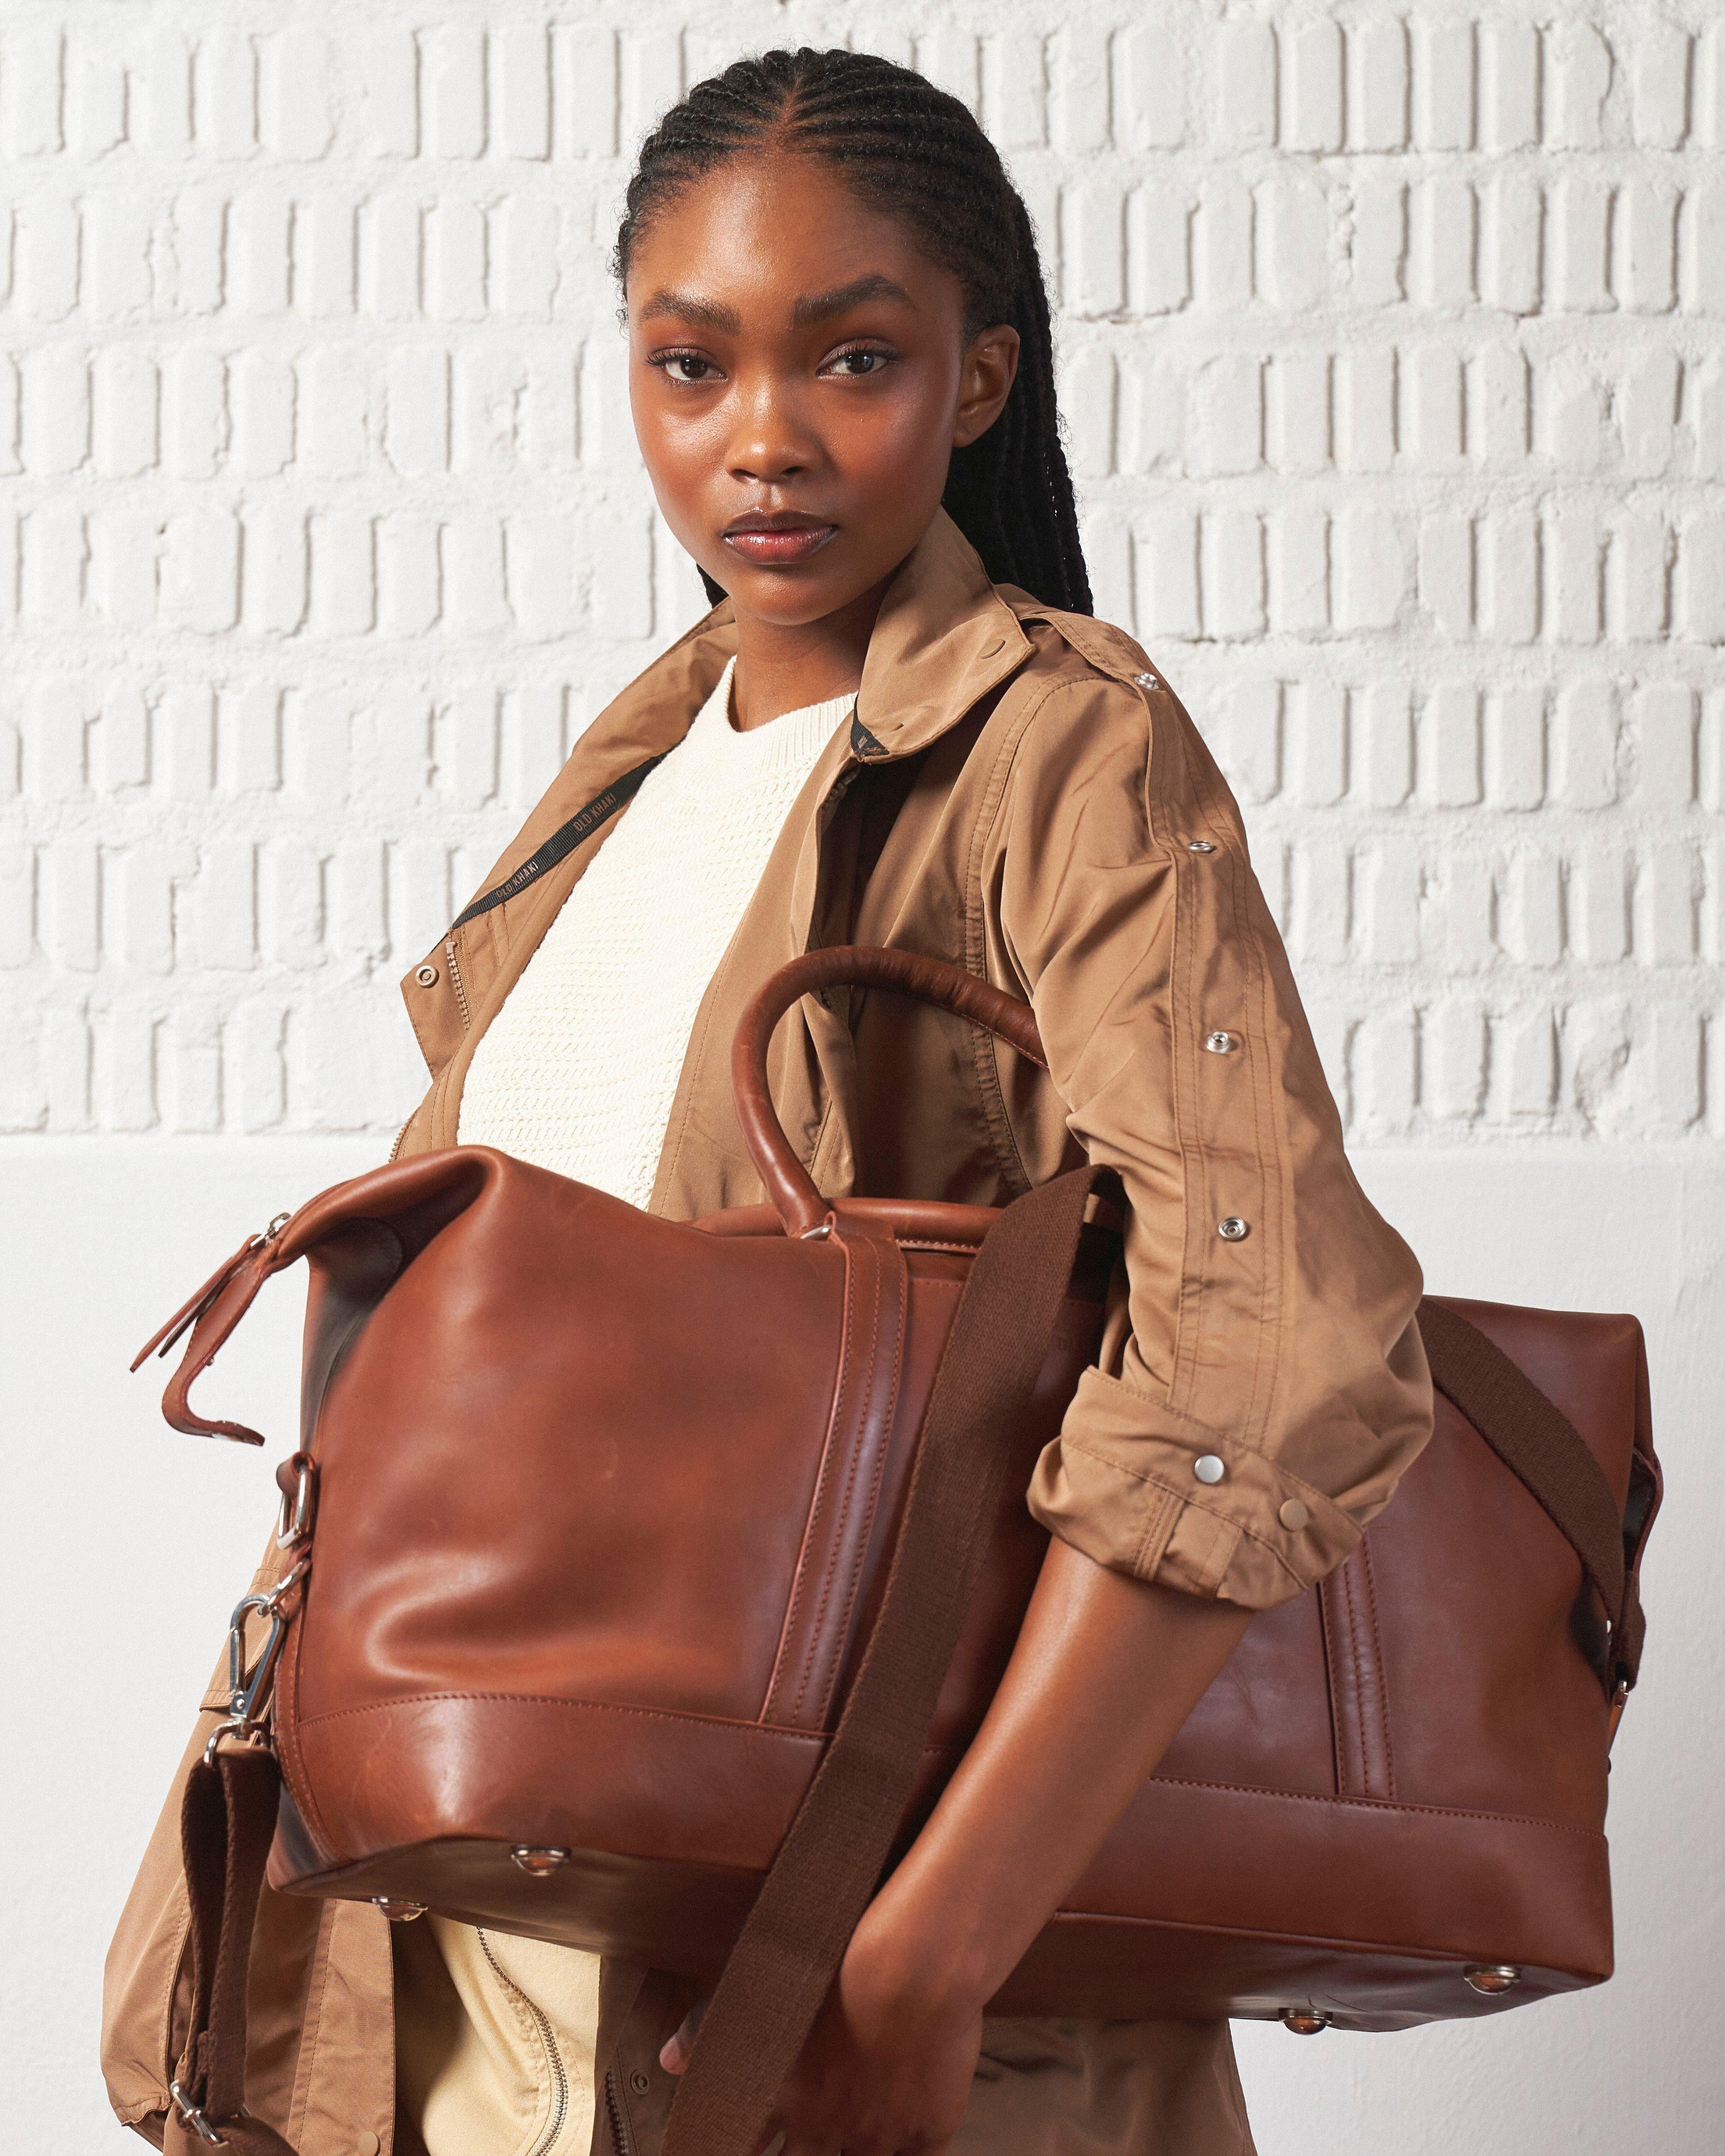 Unisex Rami Leather Weekender Bag -  Brown